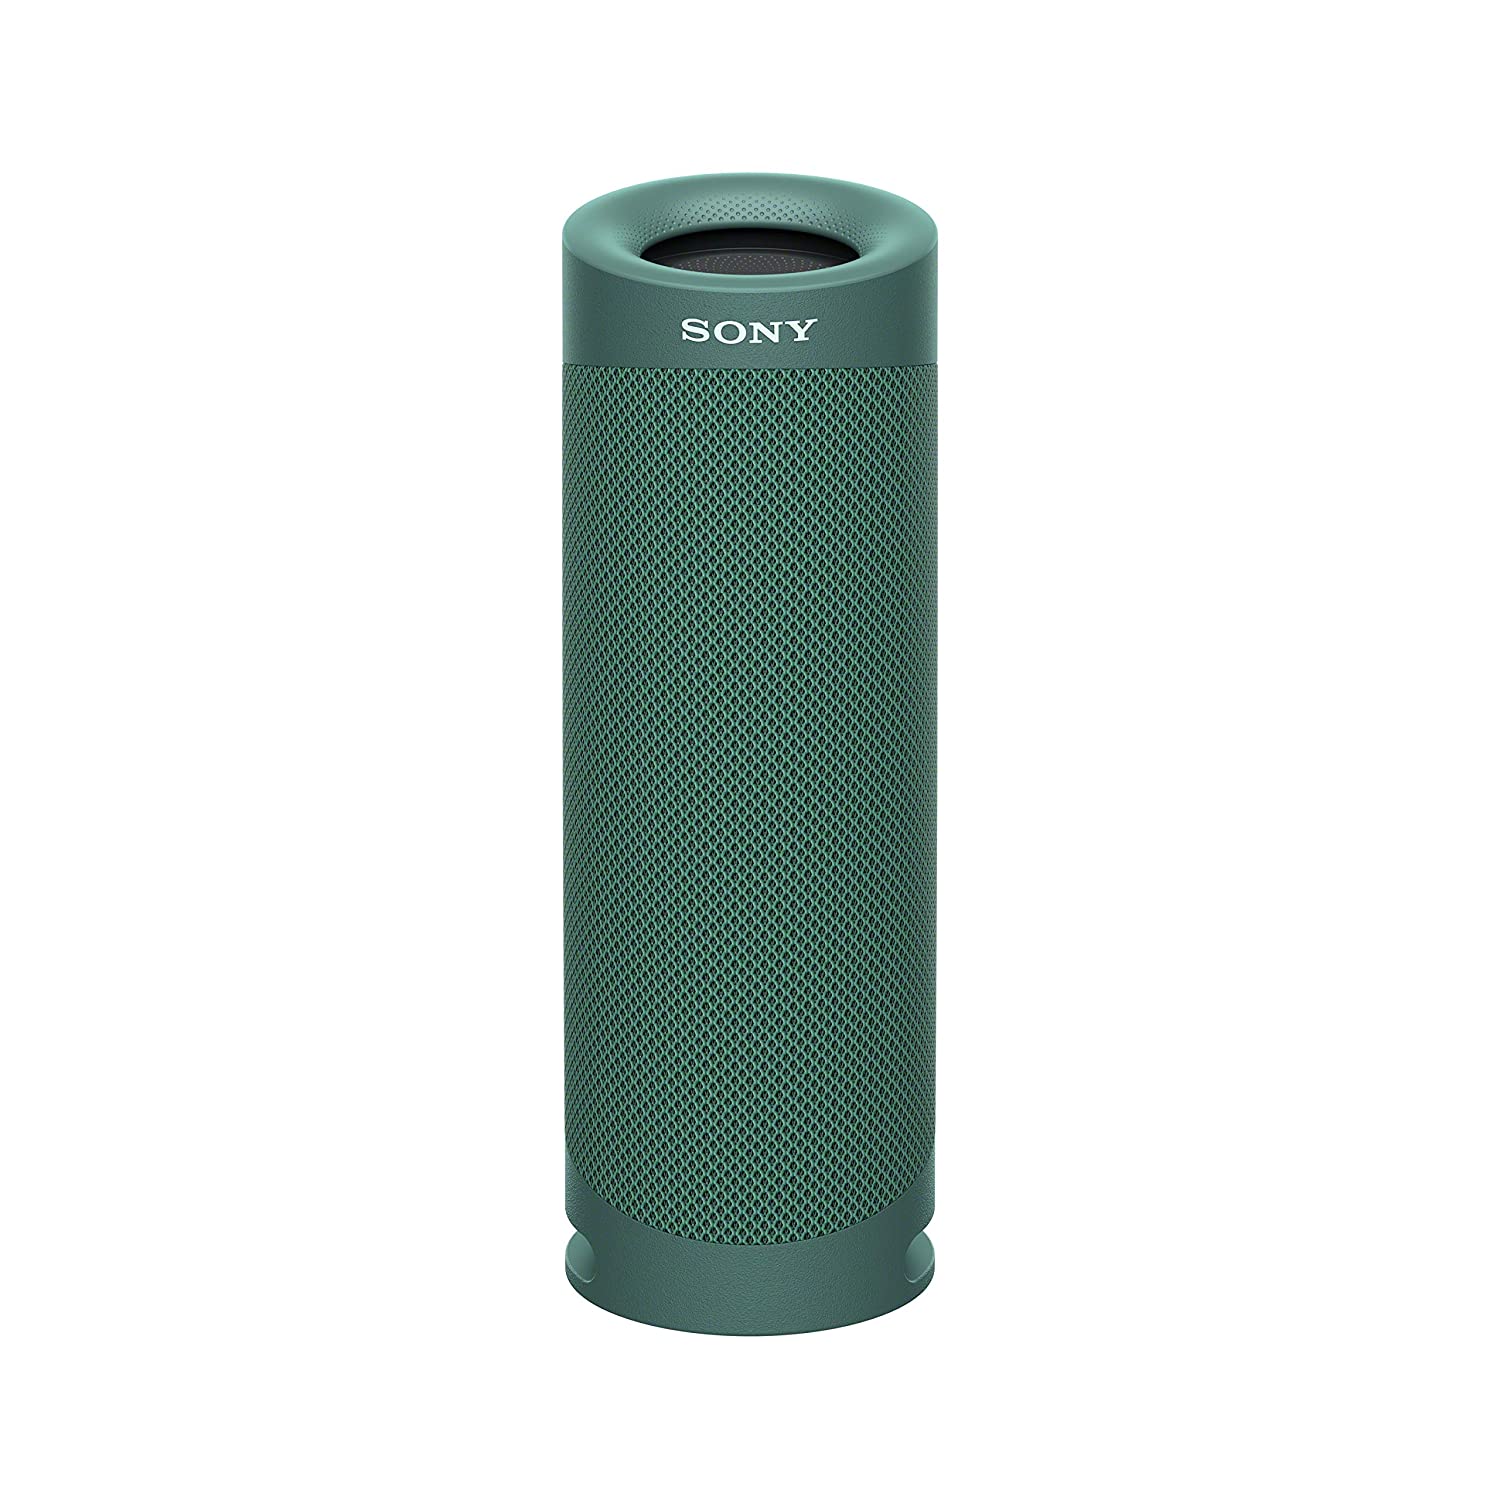 Sony SRS-XB23 Wireless Extra Bass Bluetooth Speaker